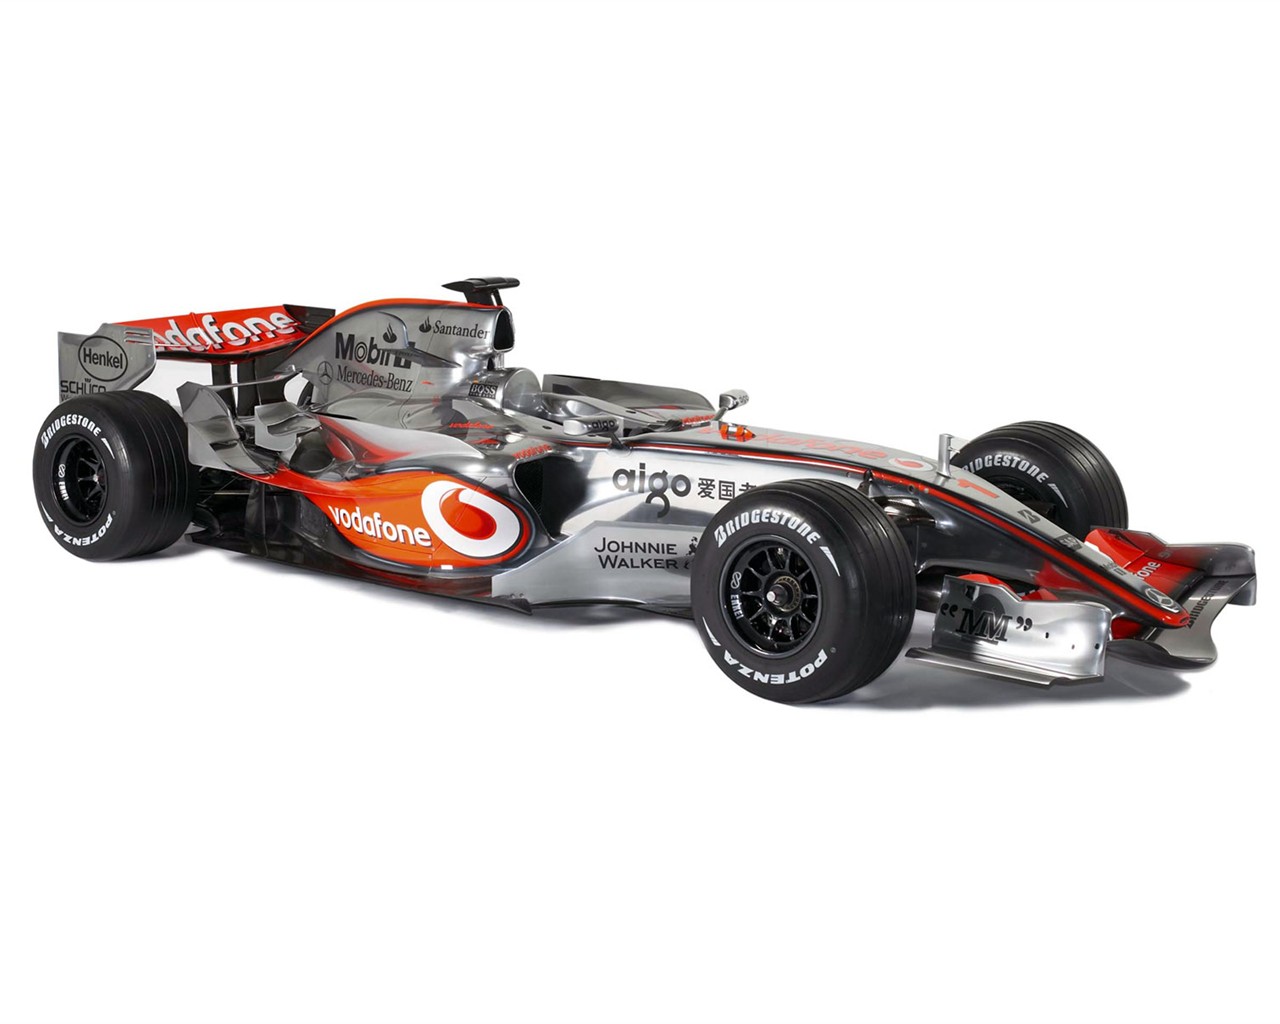  F1のレースのHD画像は、アルバム #10 - 1280x1024